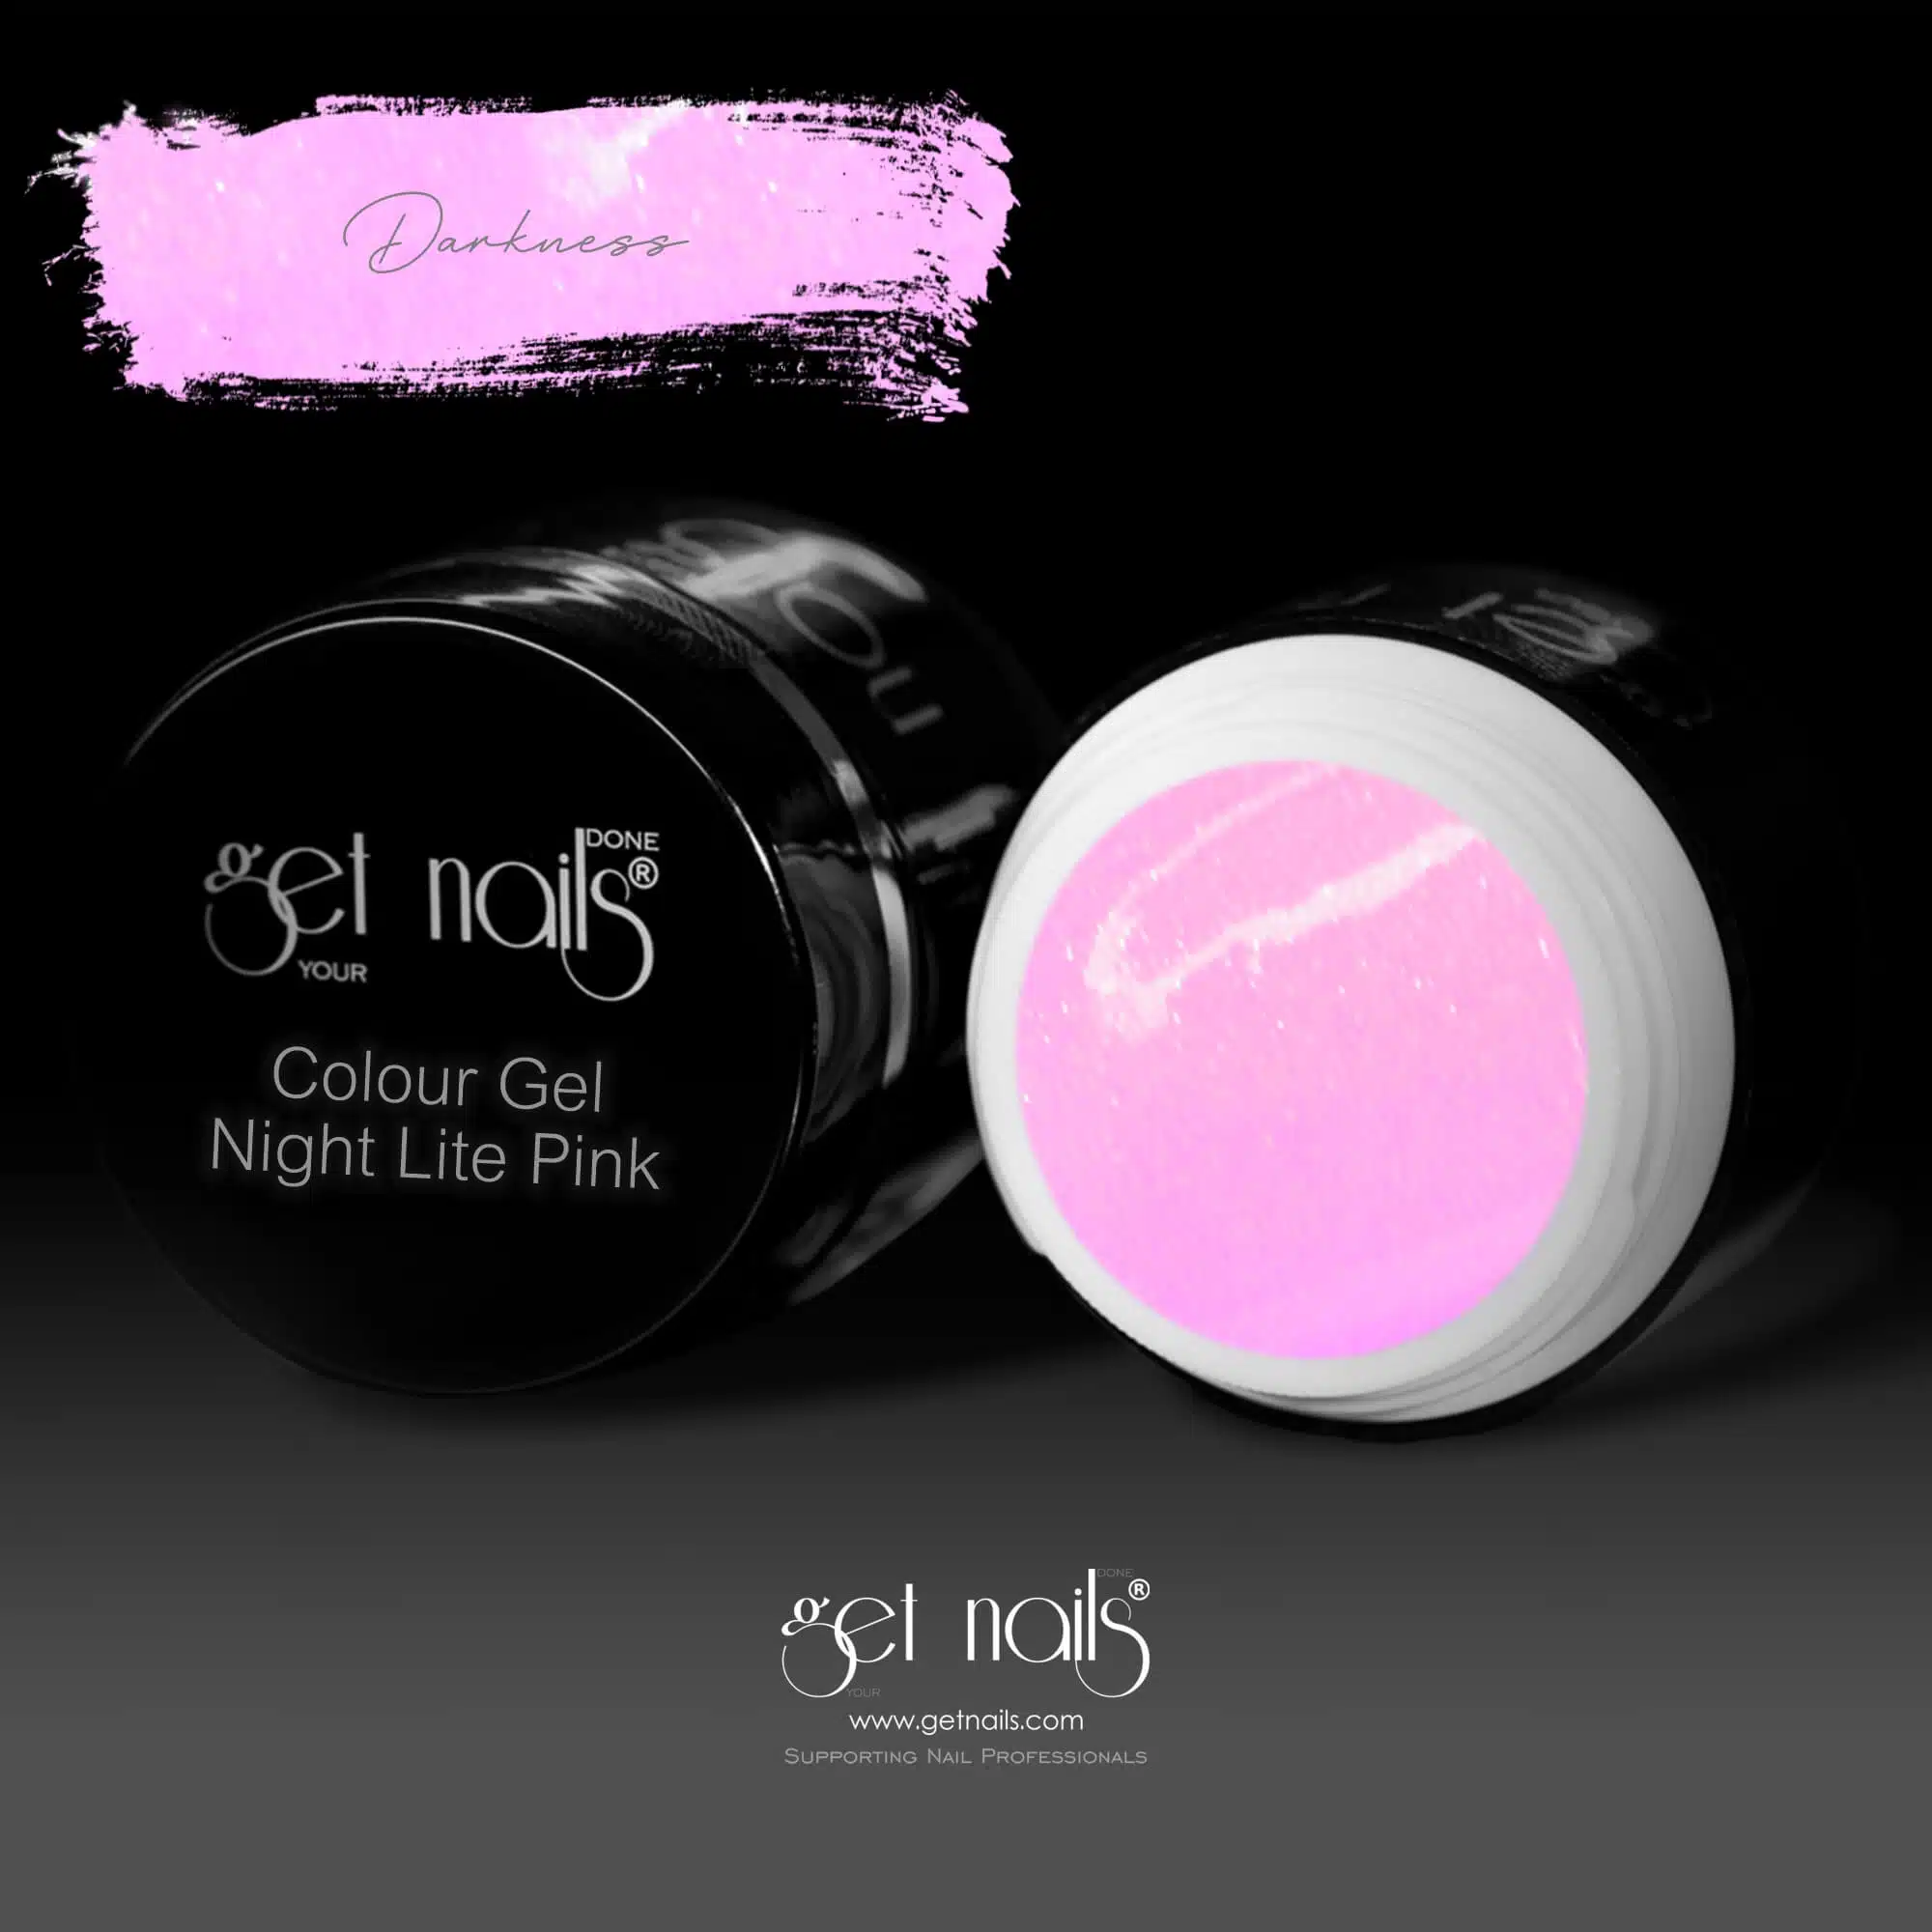 Get Nails Austria - Night Lite Colour Gel Pink 5g darkness